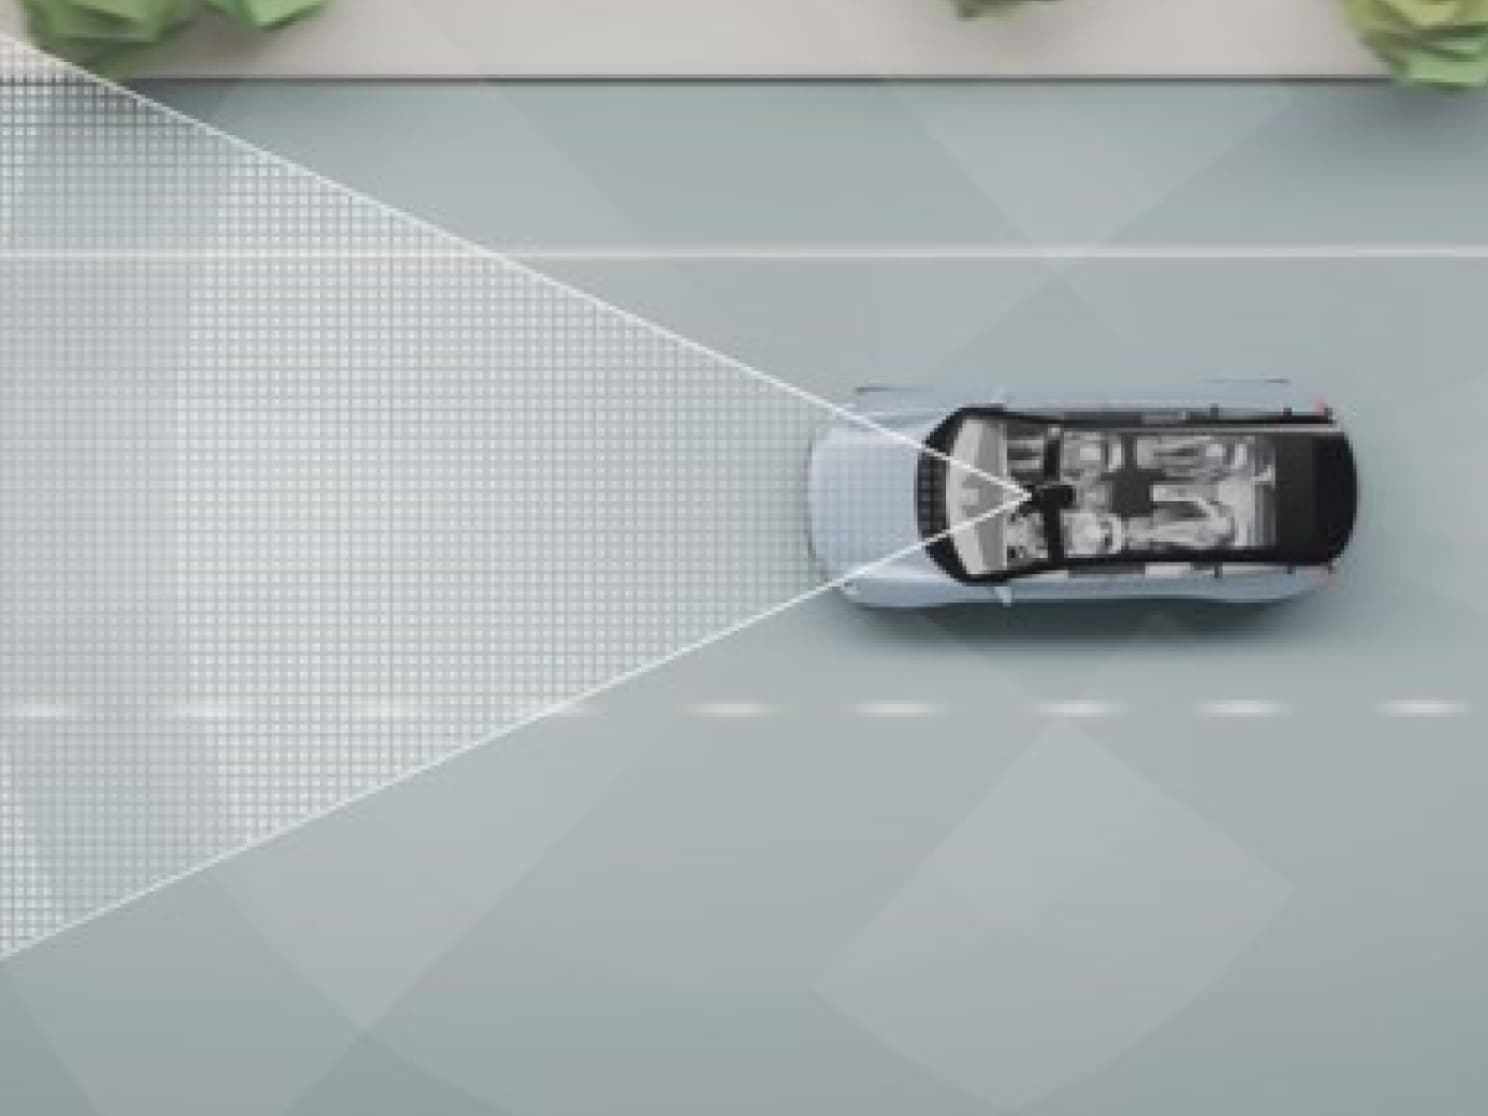 Digitalni prikaz automobila na putu sa linijama i drugim stvarima.